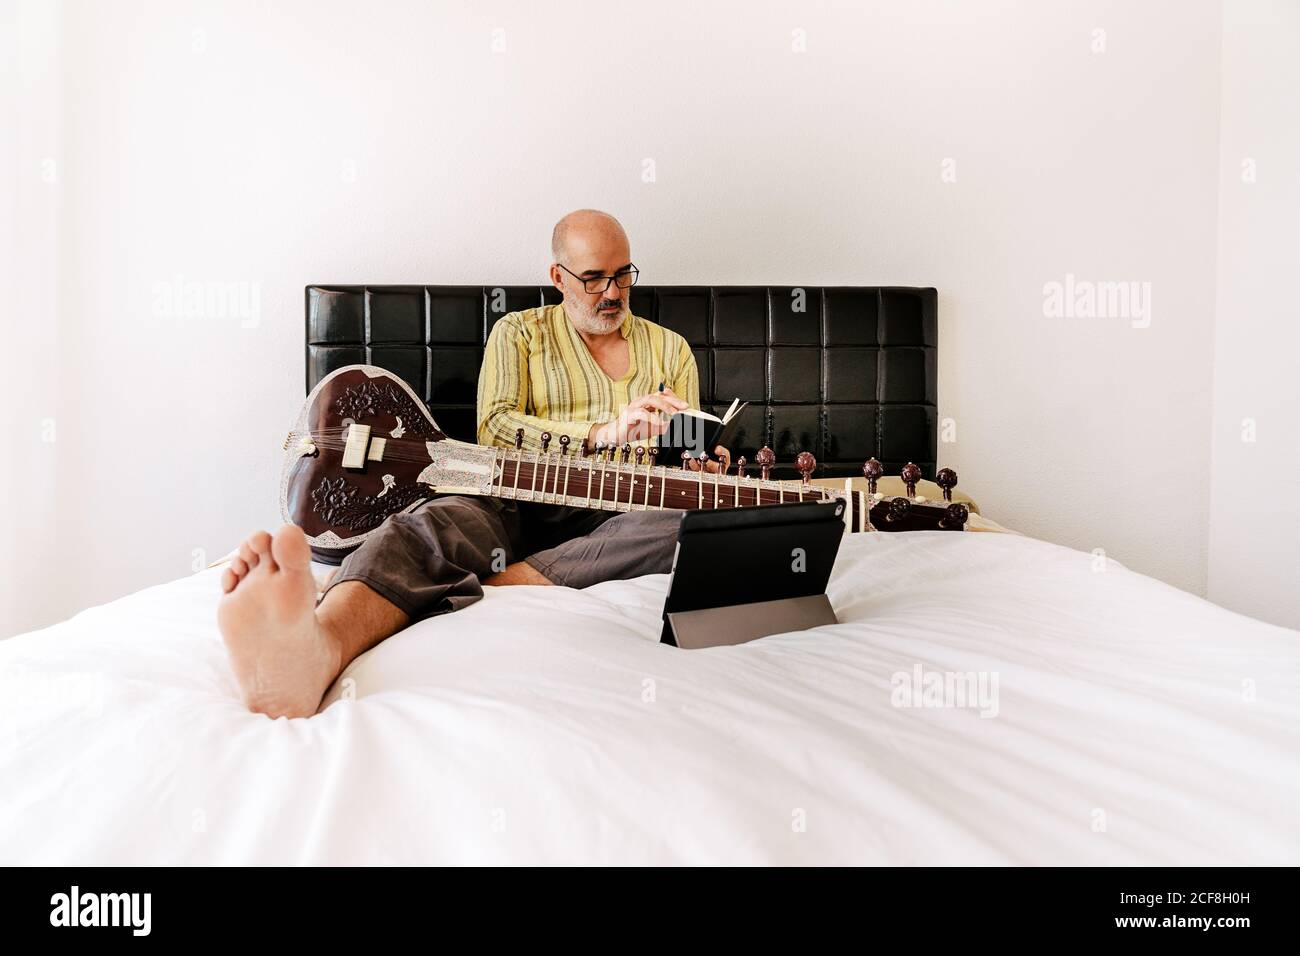 Uomo anziano seduto a letto con seduta e prendendo appunti in un notebook mentre guardi una lezione online sul tablet Foto Stock